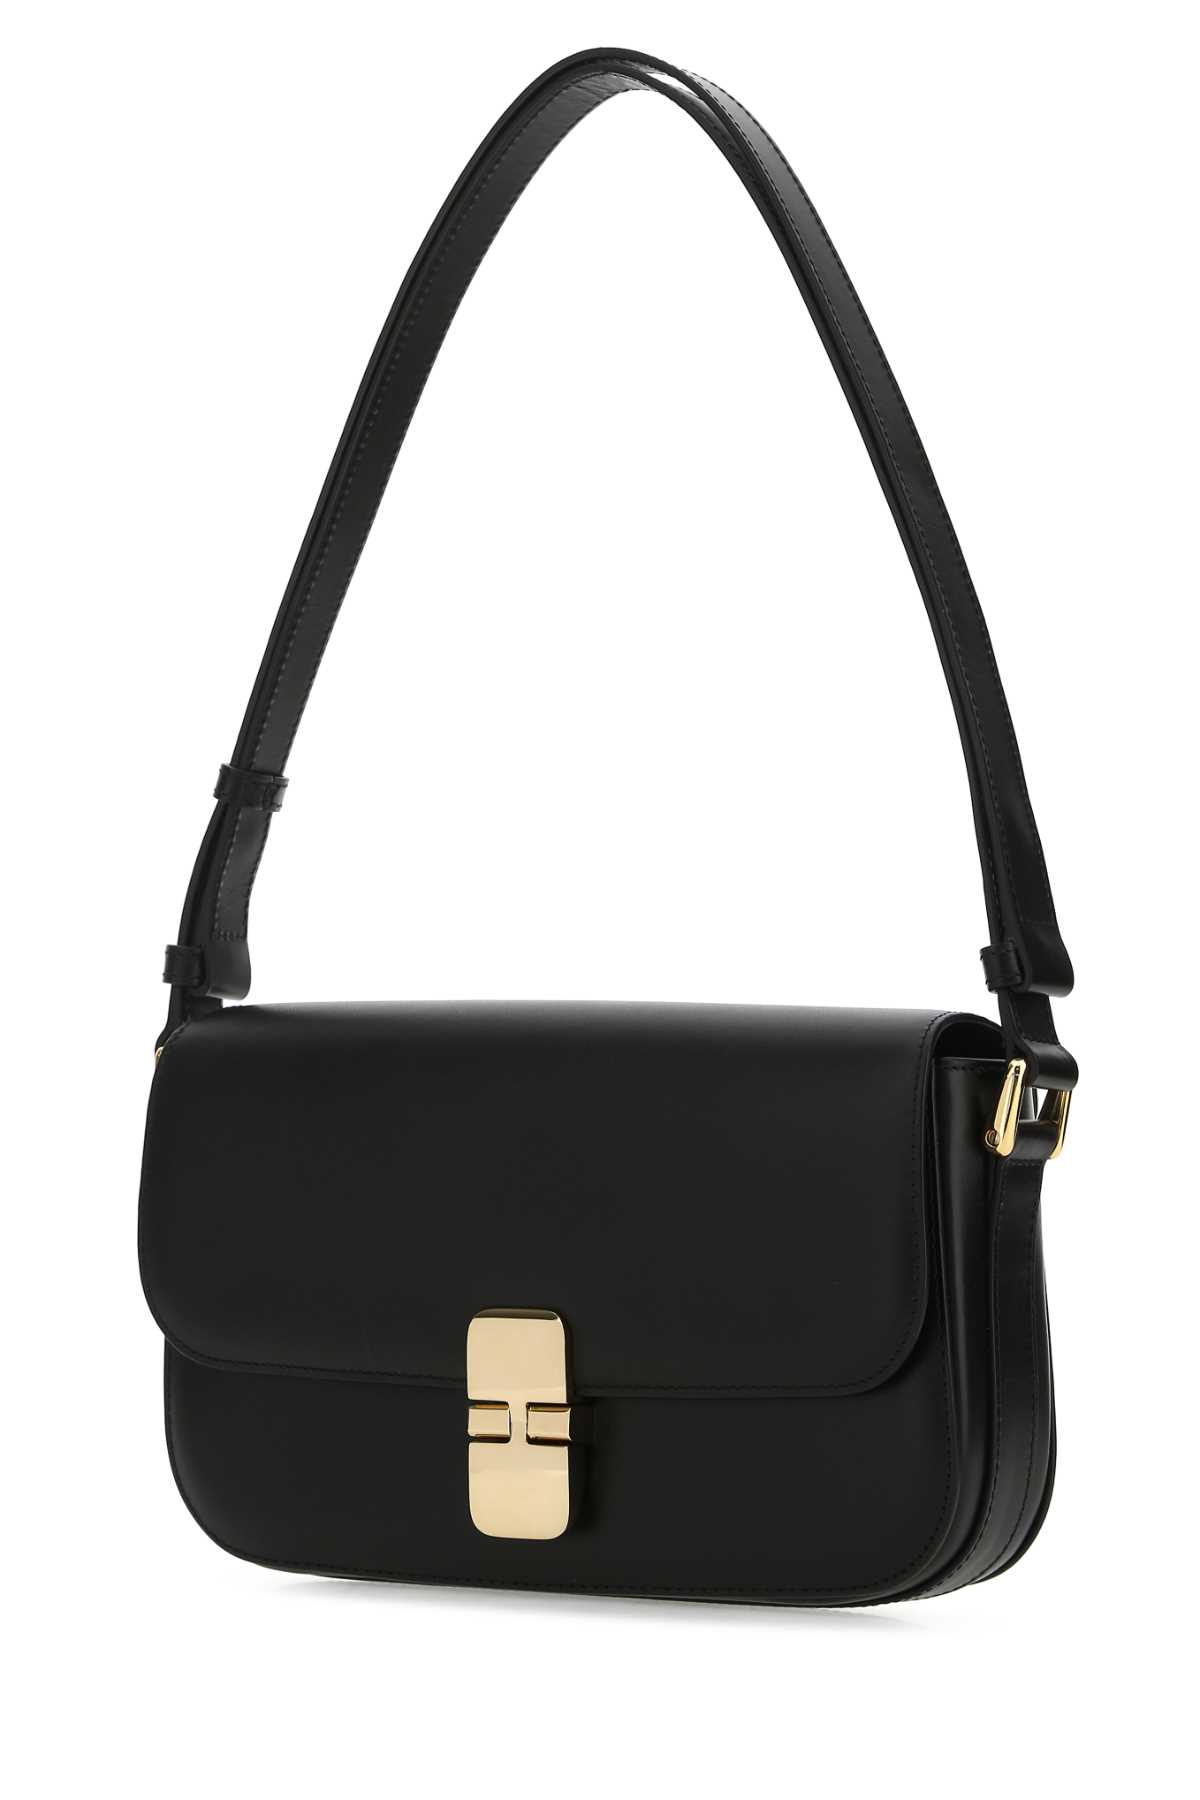 Shop Apc Black Leather Grace Shoulder Bag In Lzz